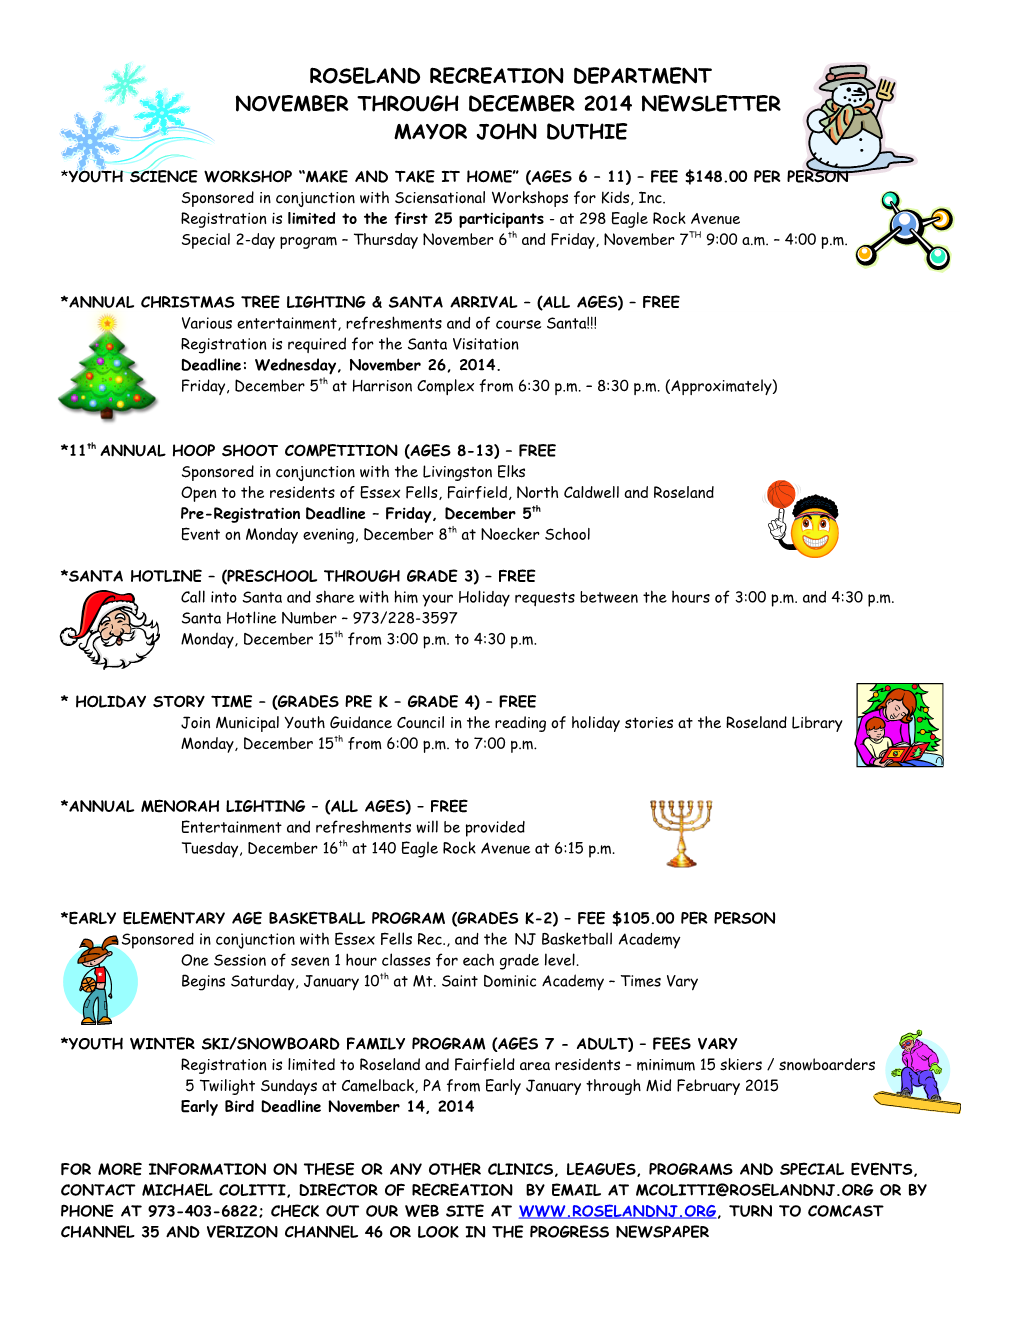 November Through December 2014 Newsletter